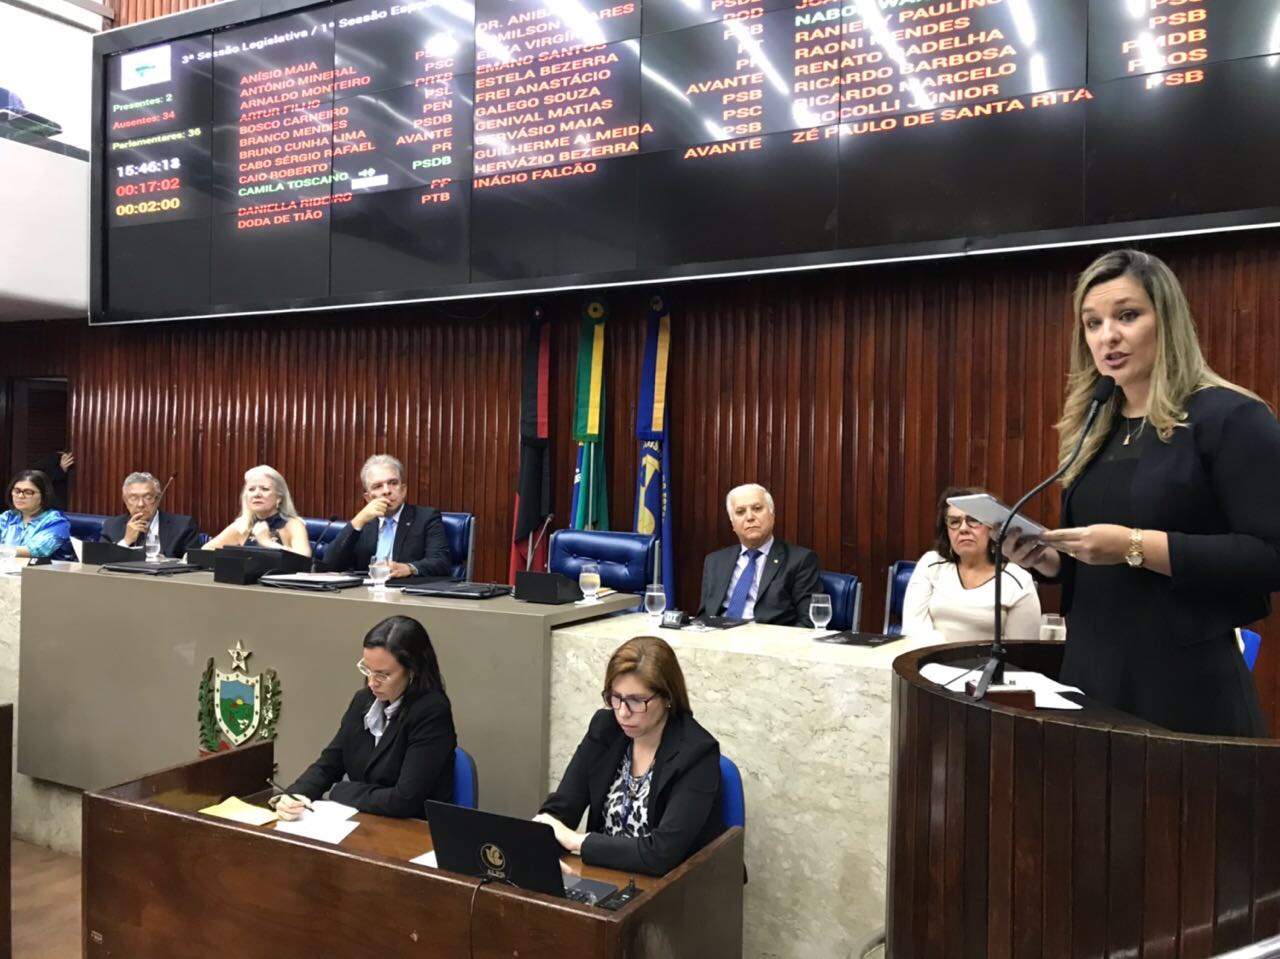 AL-PB realiza sessão para celebrar o centenário de nascimento do professor Afonso Pereira fundador do Unipê